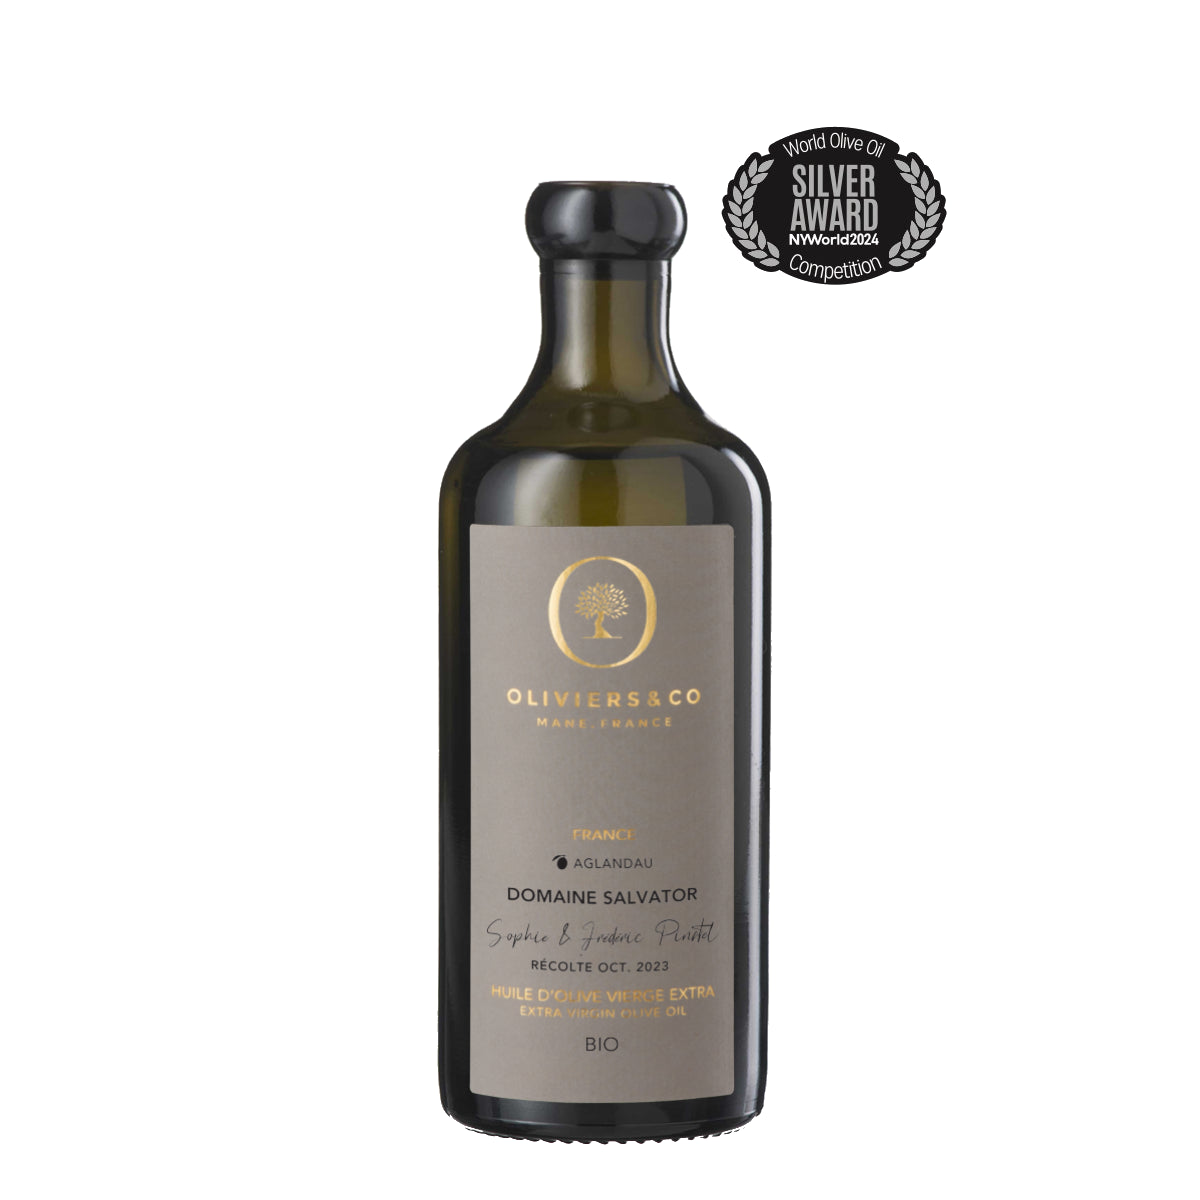 Sølvvinder økologisk Domaine Salvator ekstra jomfru olivenolie 250 ml fra Oliviers & Co